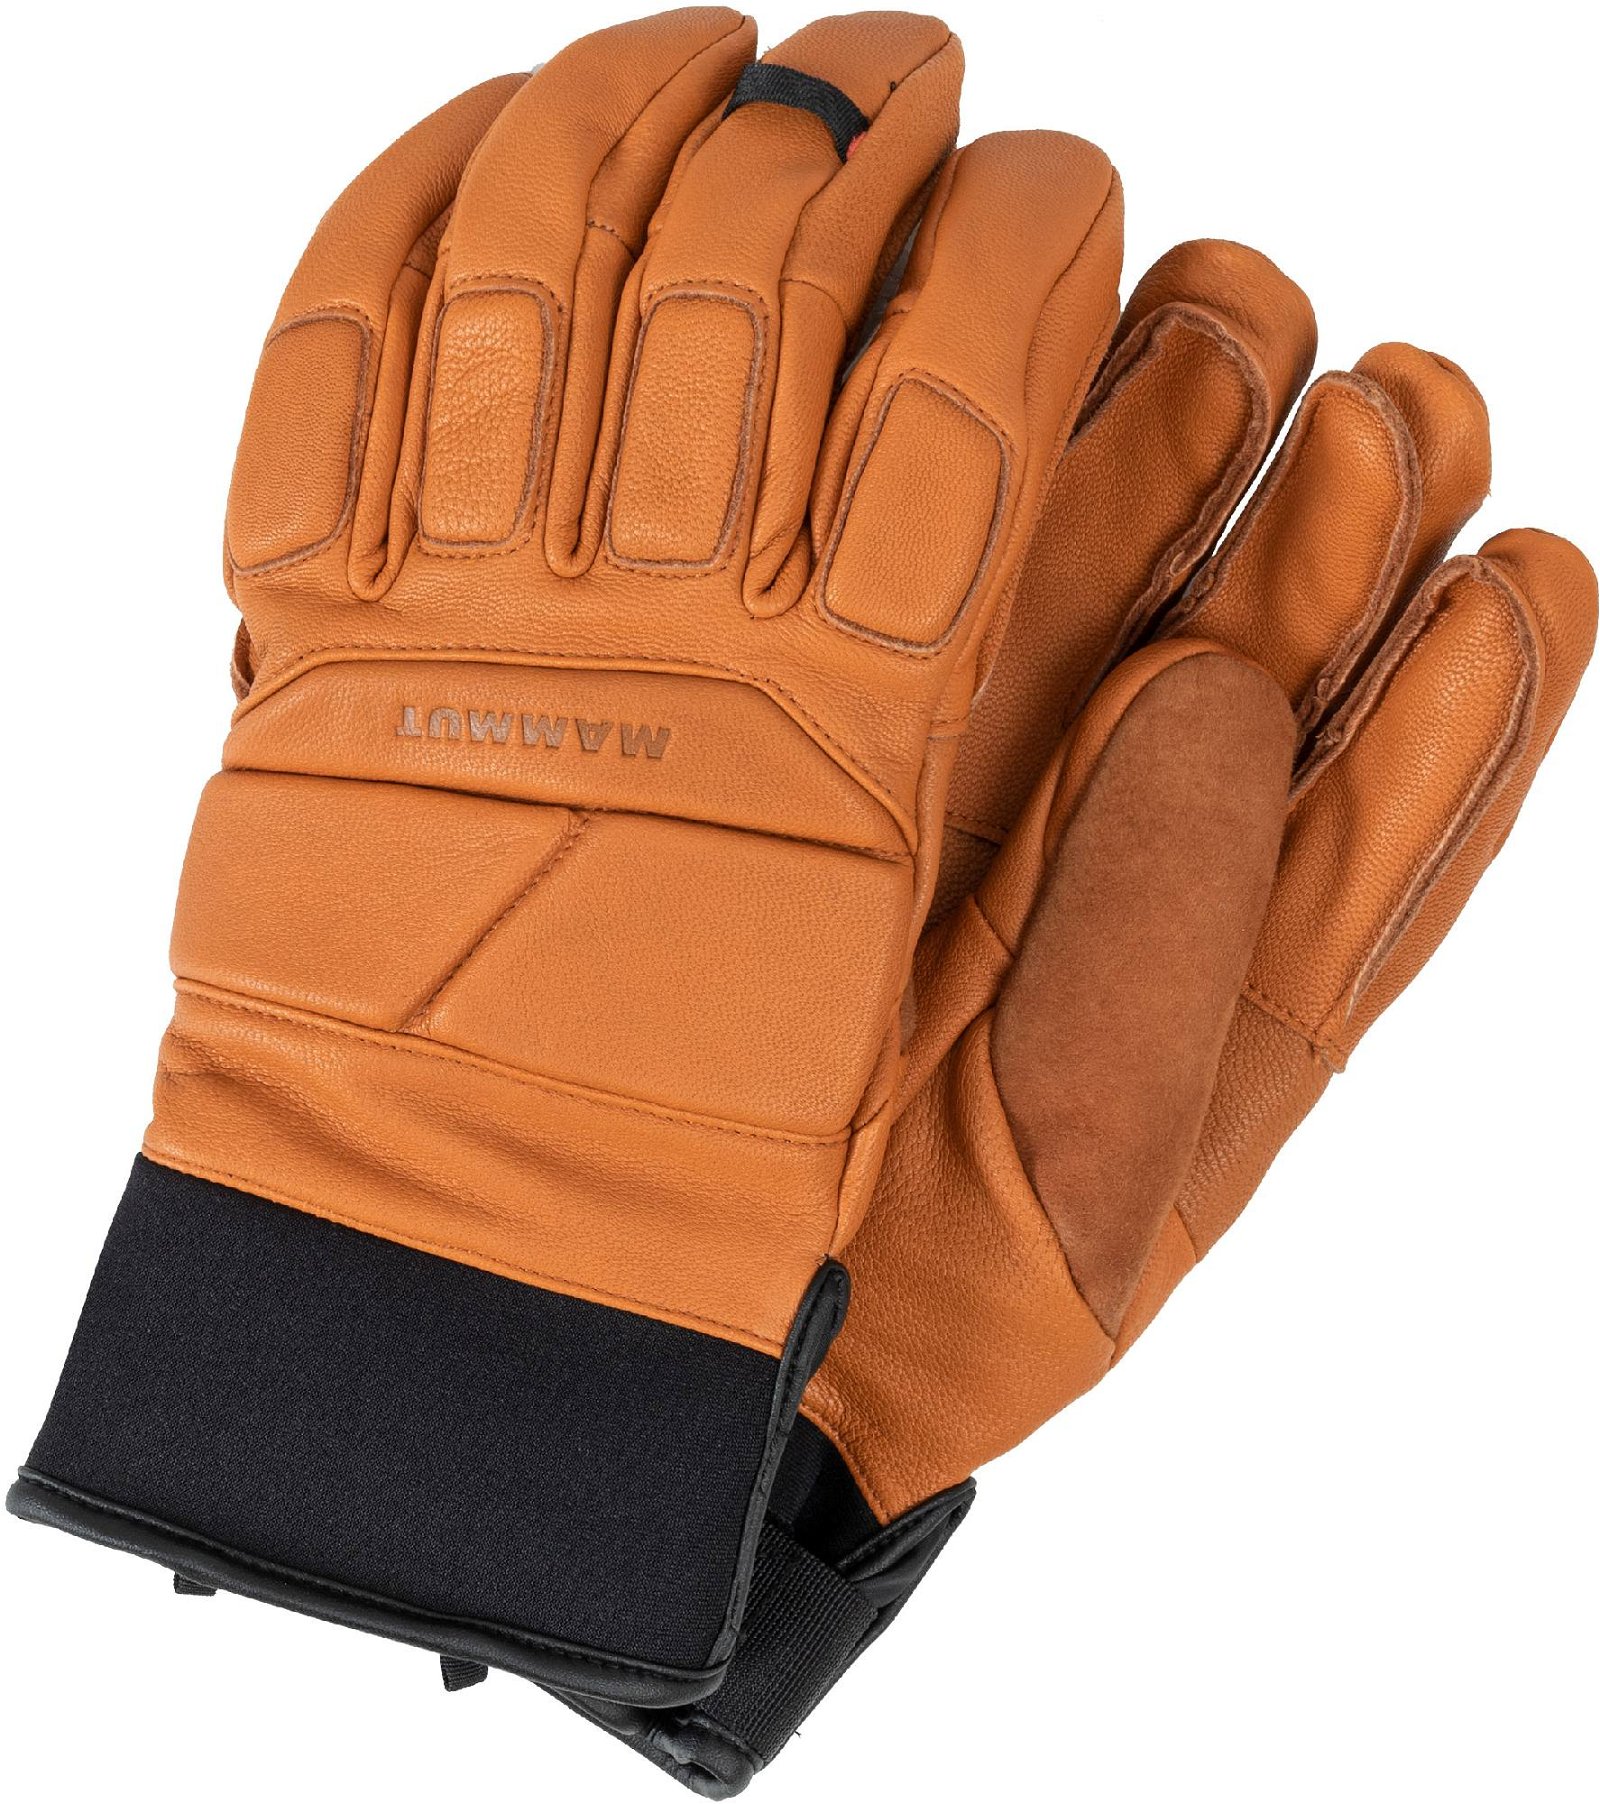 Mammut La Liste Glove